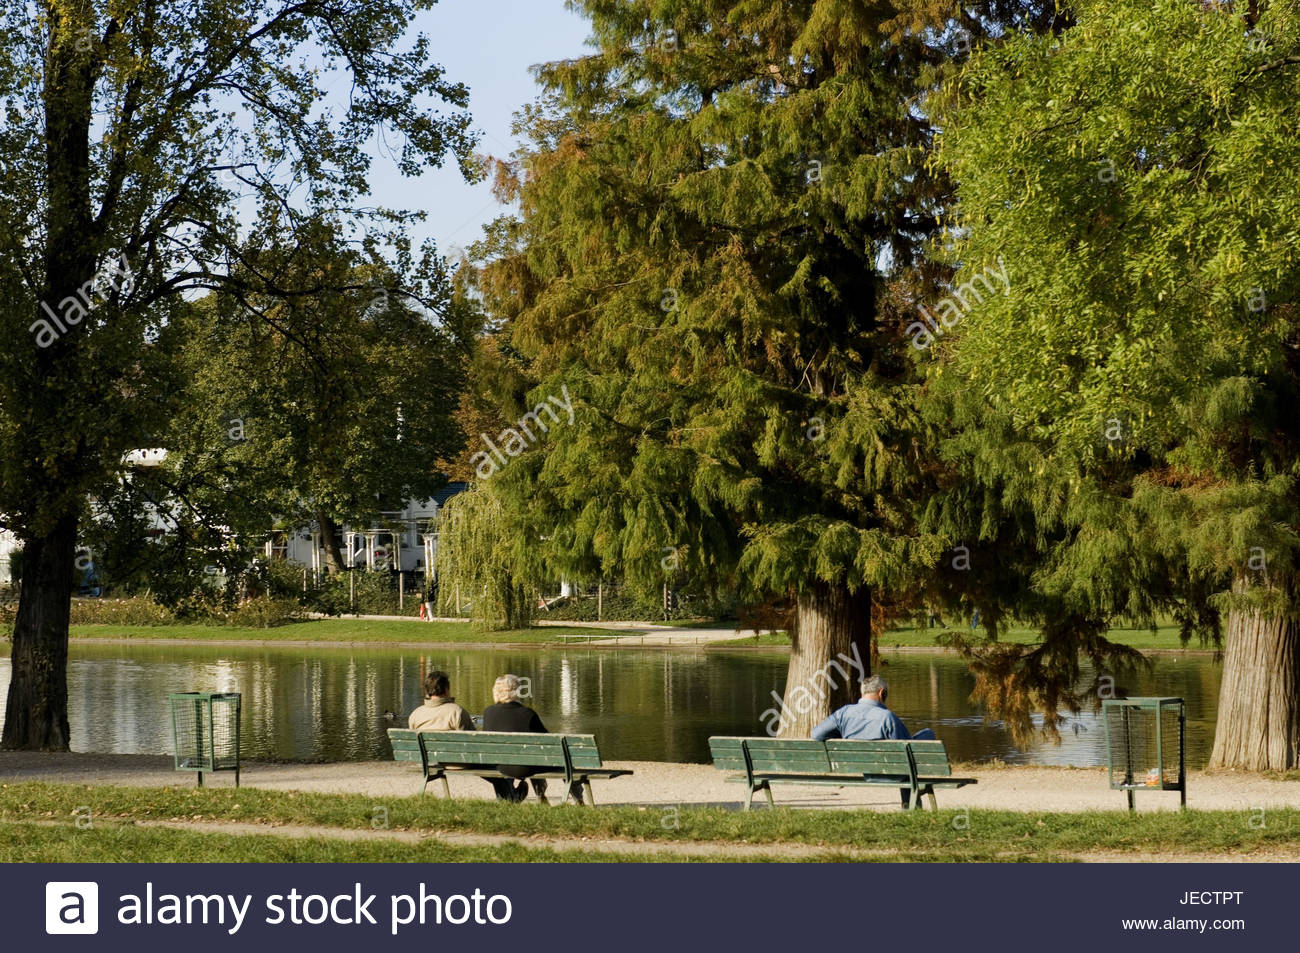 france paris bois de vincennes lac daumesnil shore park benches tourists JECTPT